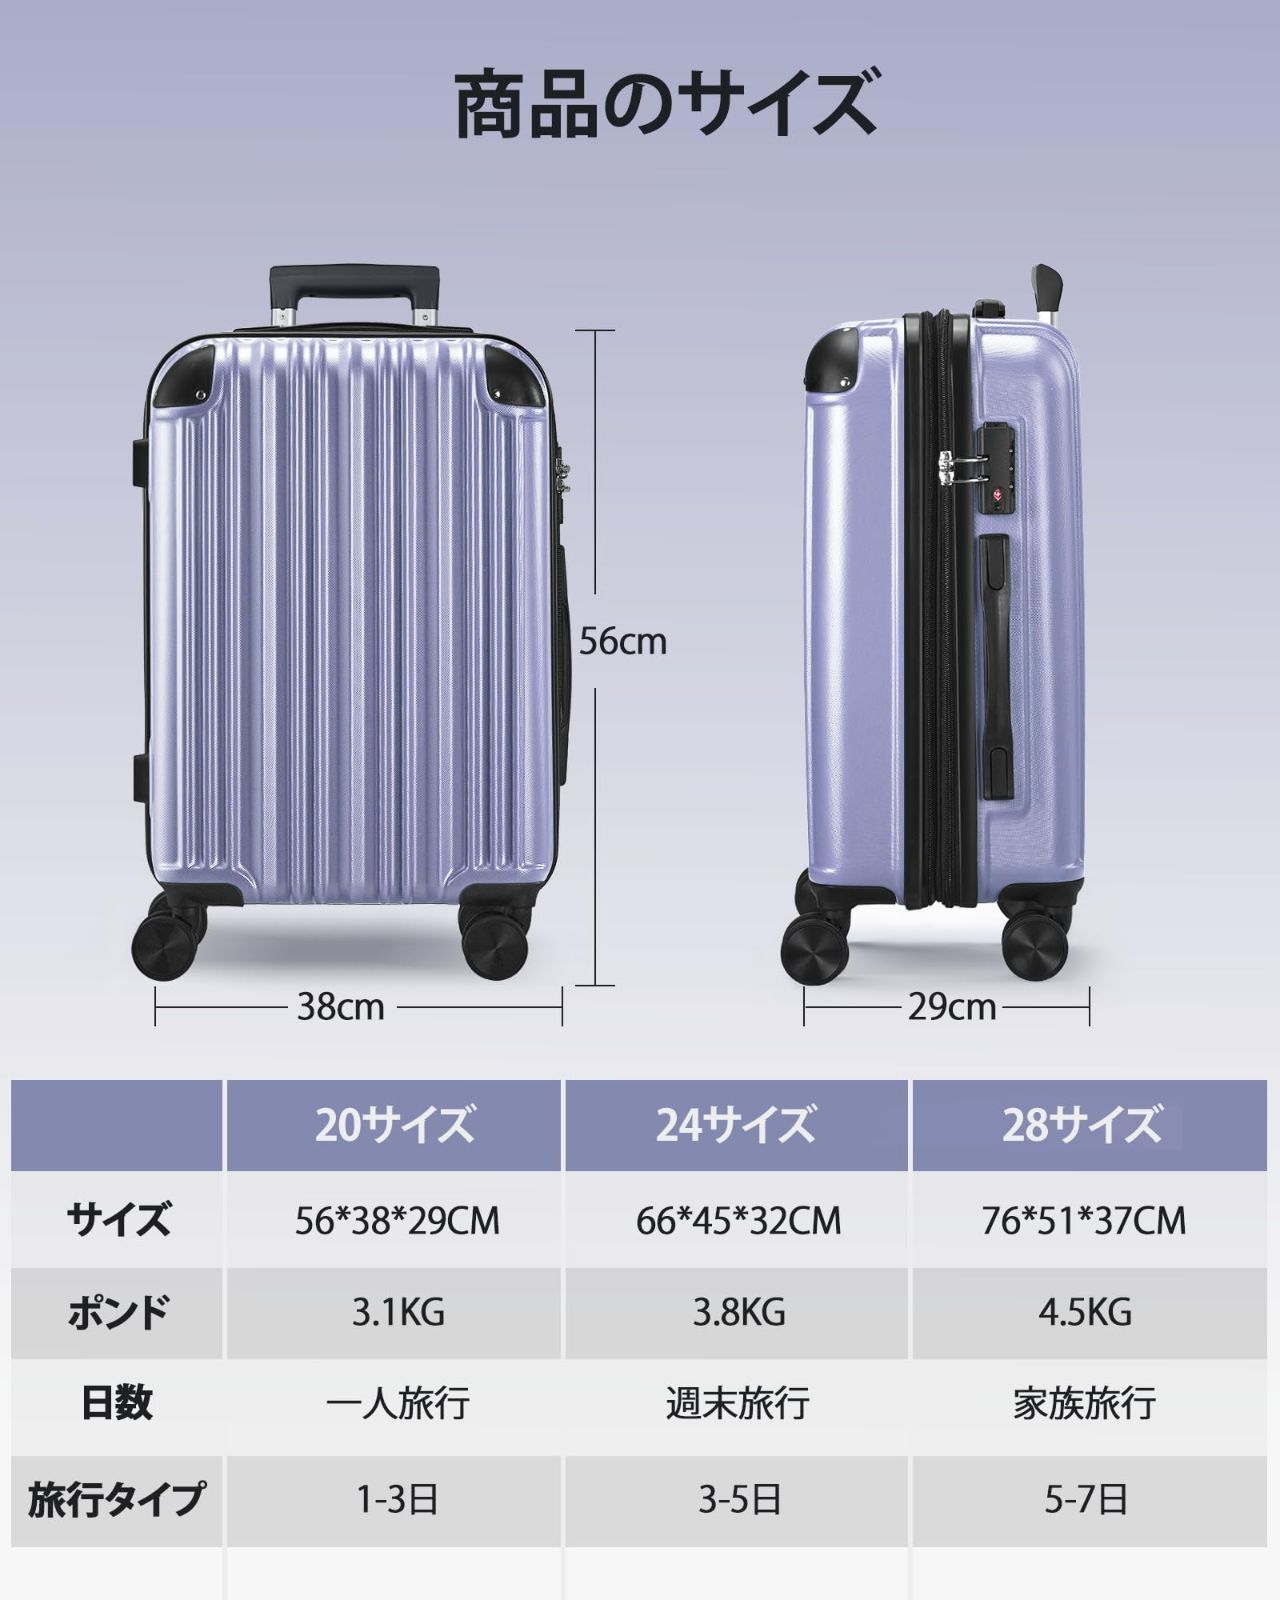 【色: ブラック】SunnyTour 拡張機能 スーツケース 機内持ち込み キャ